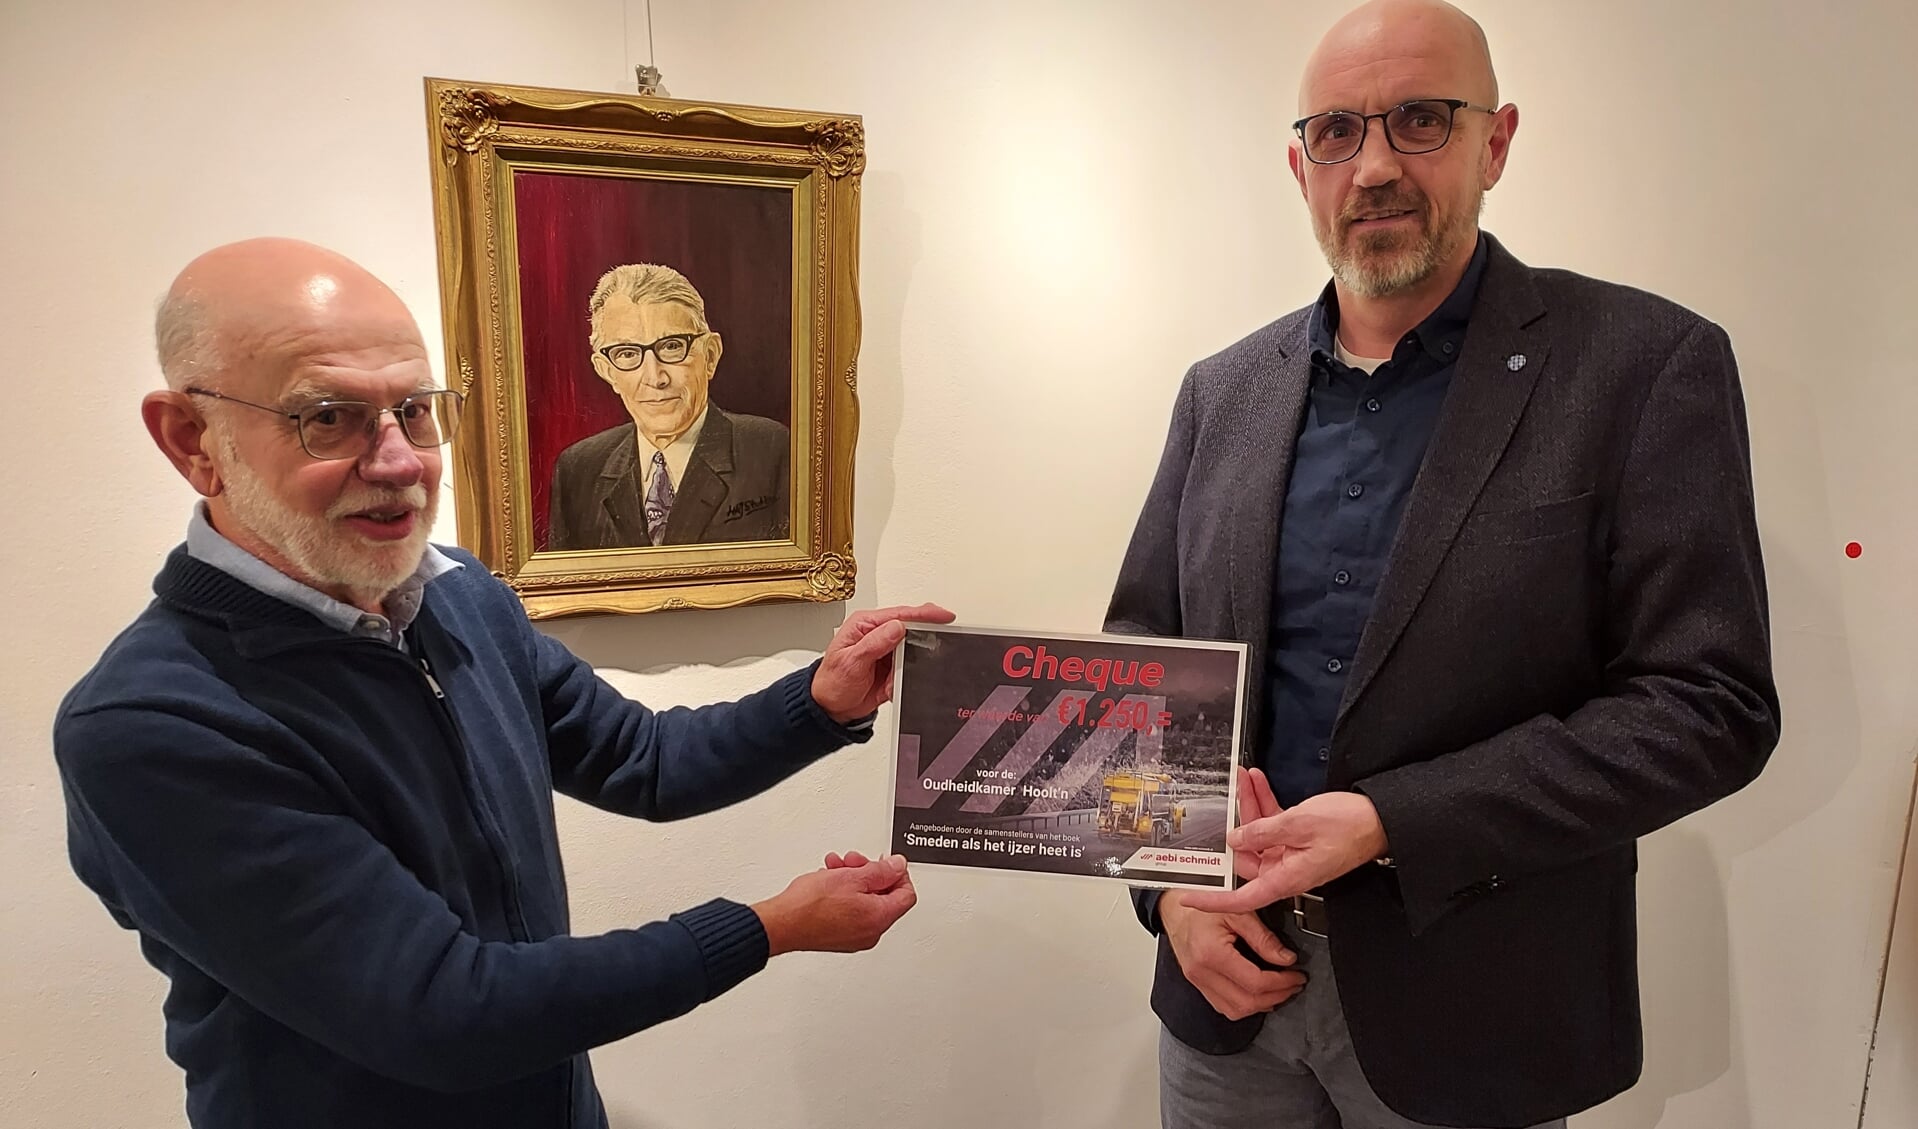 Patrick Schothuis (r) overhandigd de cheque aan Gerrit te Winkel. Op de achtergrond het schilderij van Herman Klein Velderman.